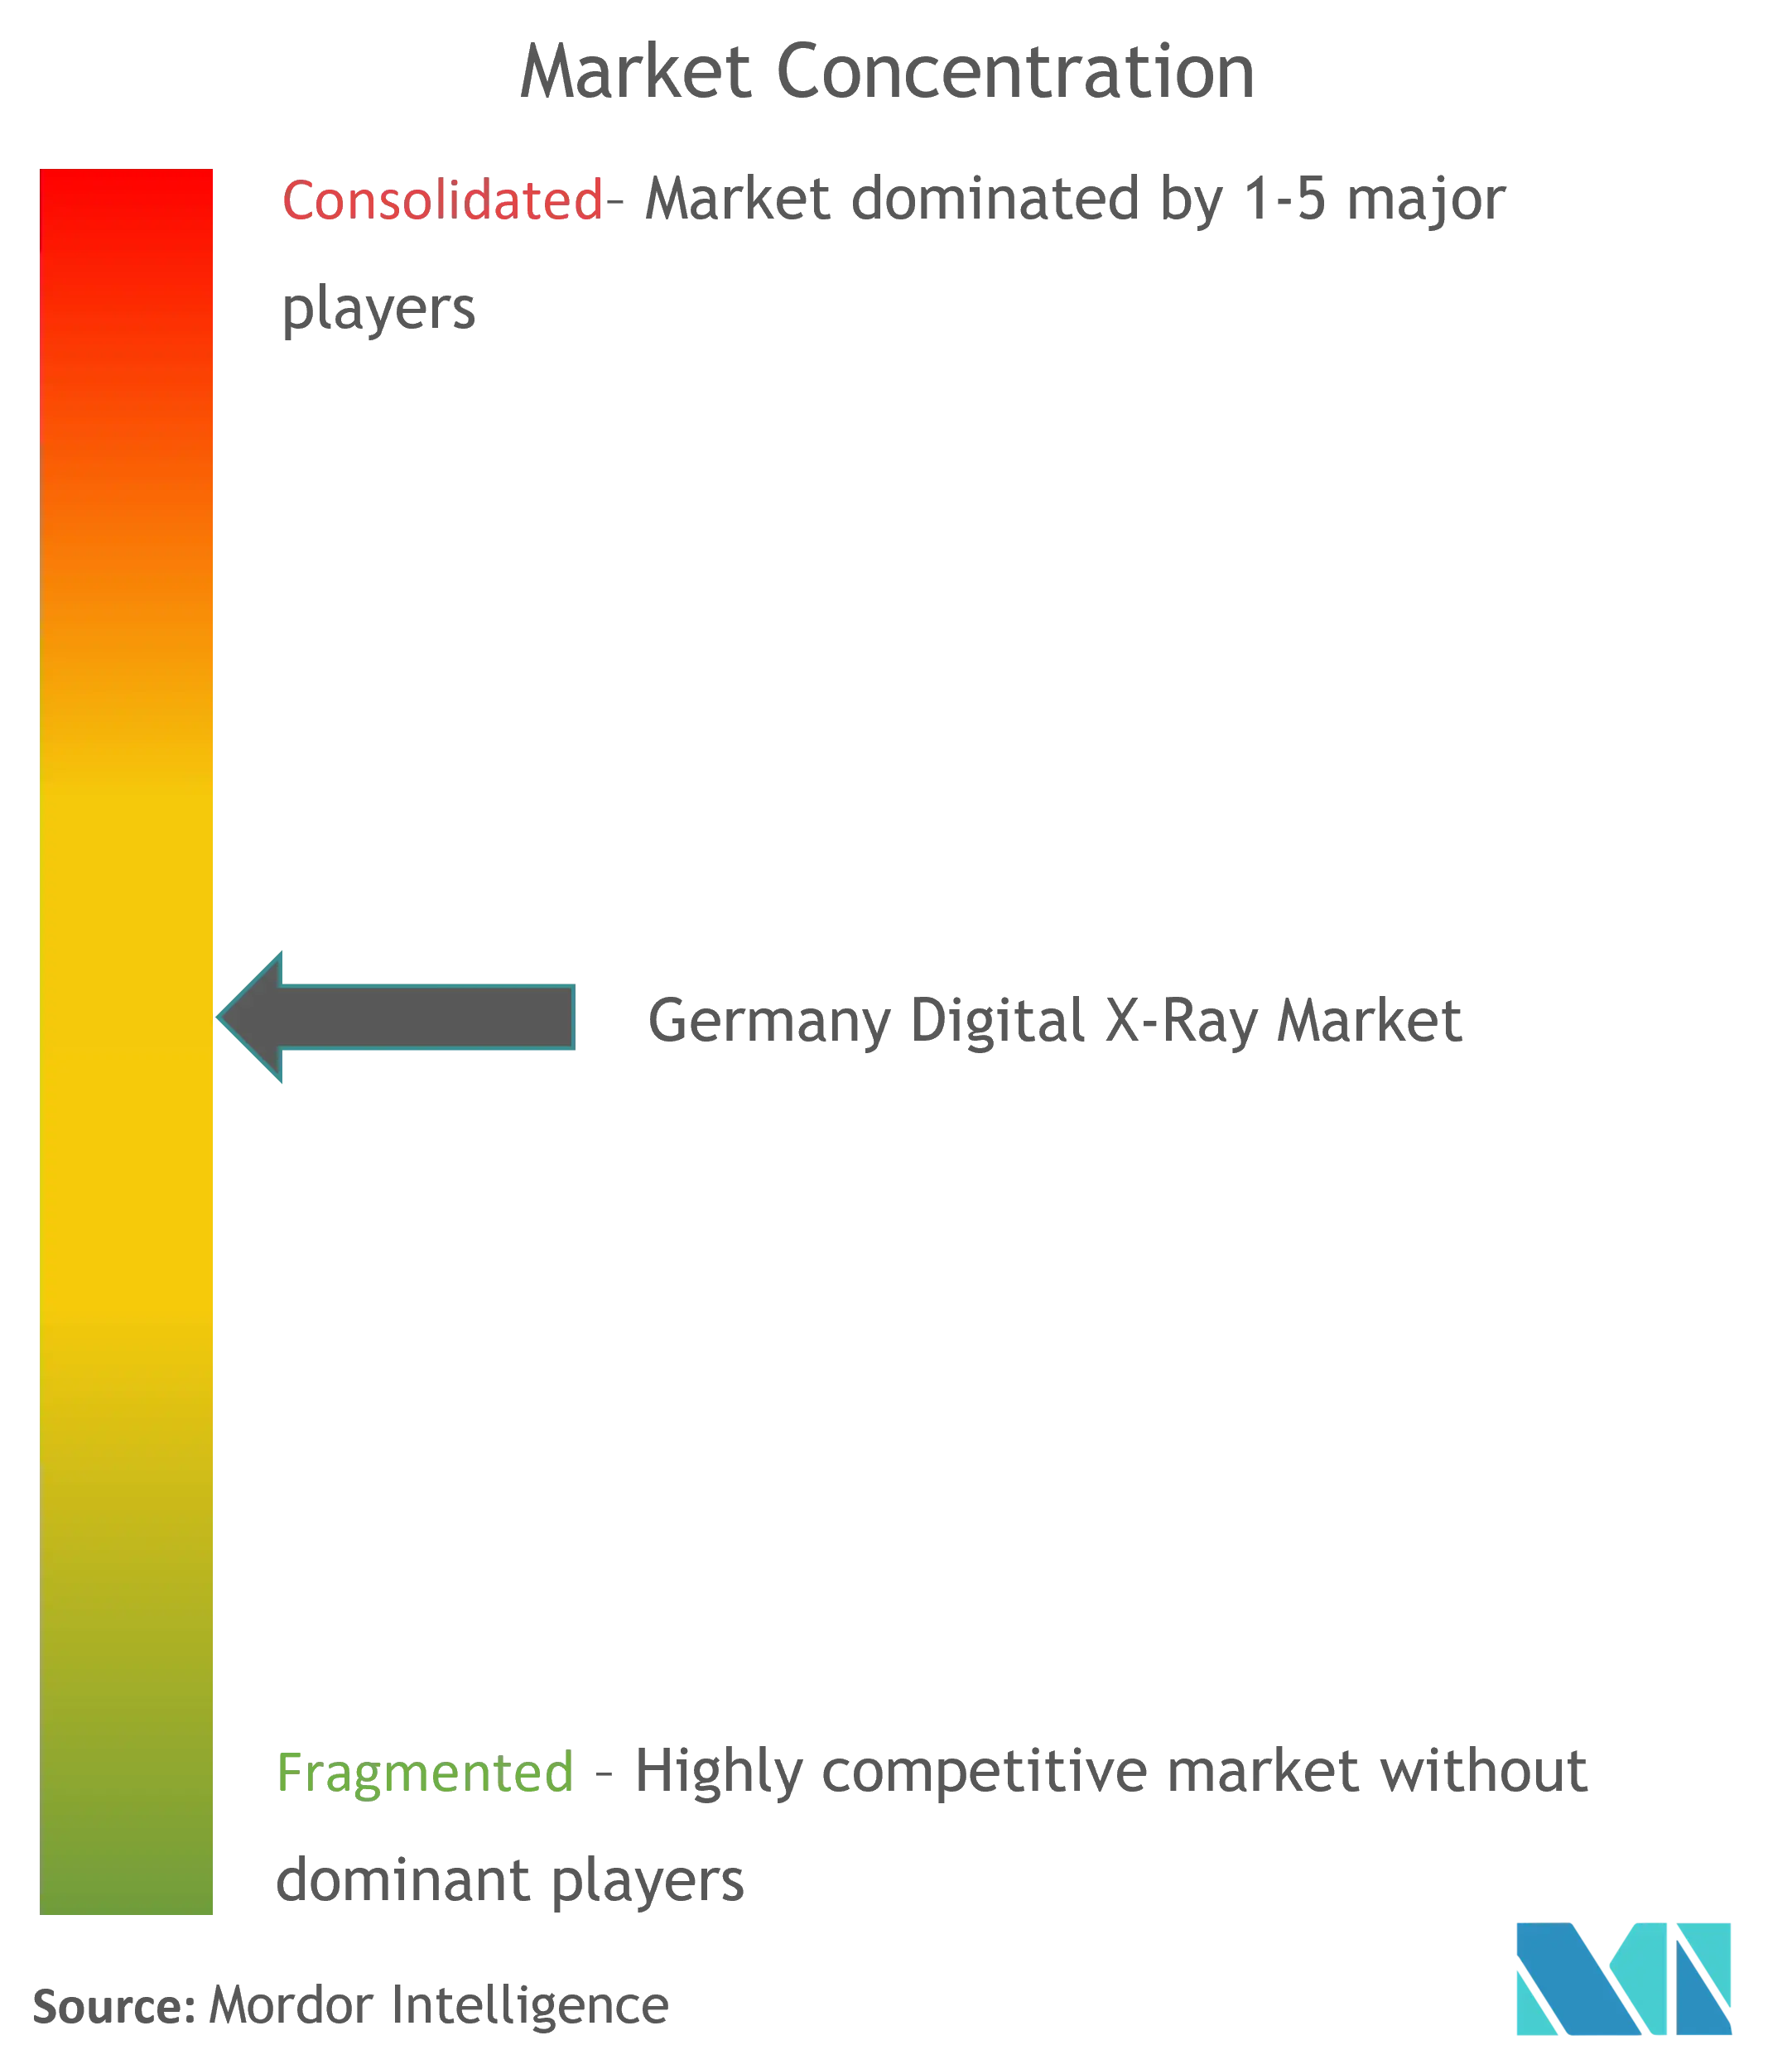 ドイツのデジタル X 線市場集中度